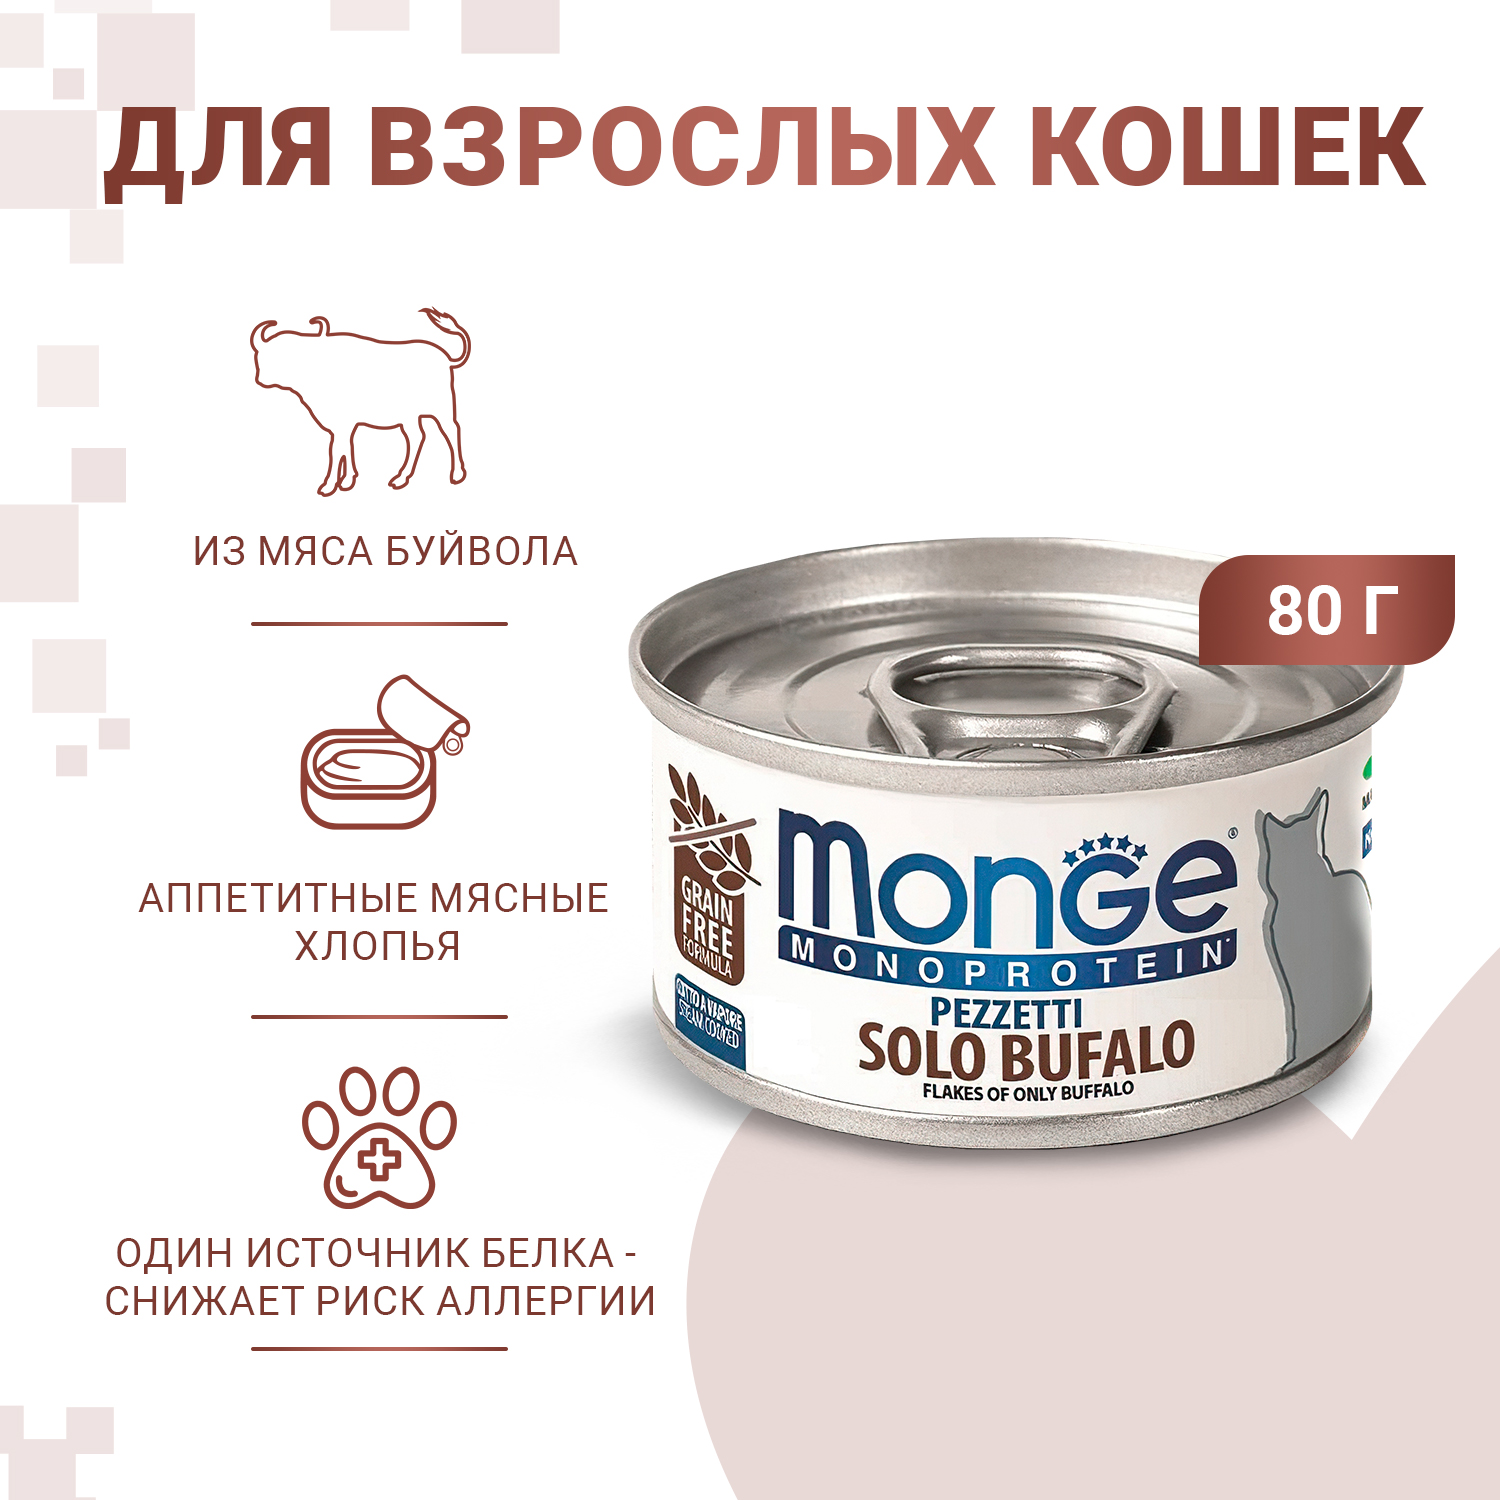 Влажный корм Monge Cat Monoprotein для кошек, мясные хлопья из мяса буйвола, консервы 80 г